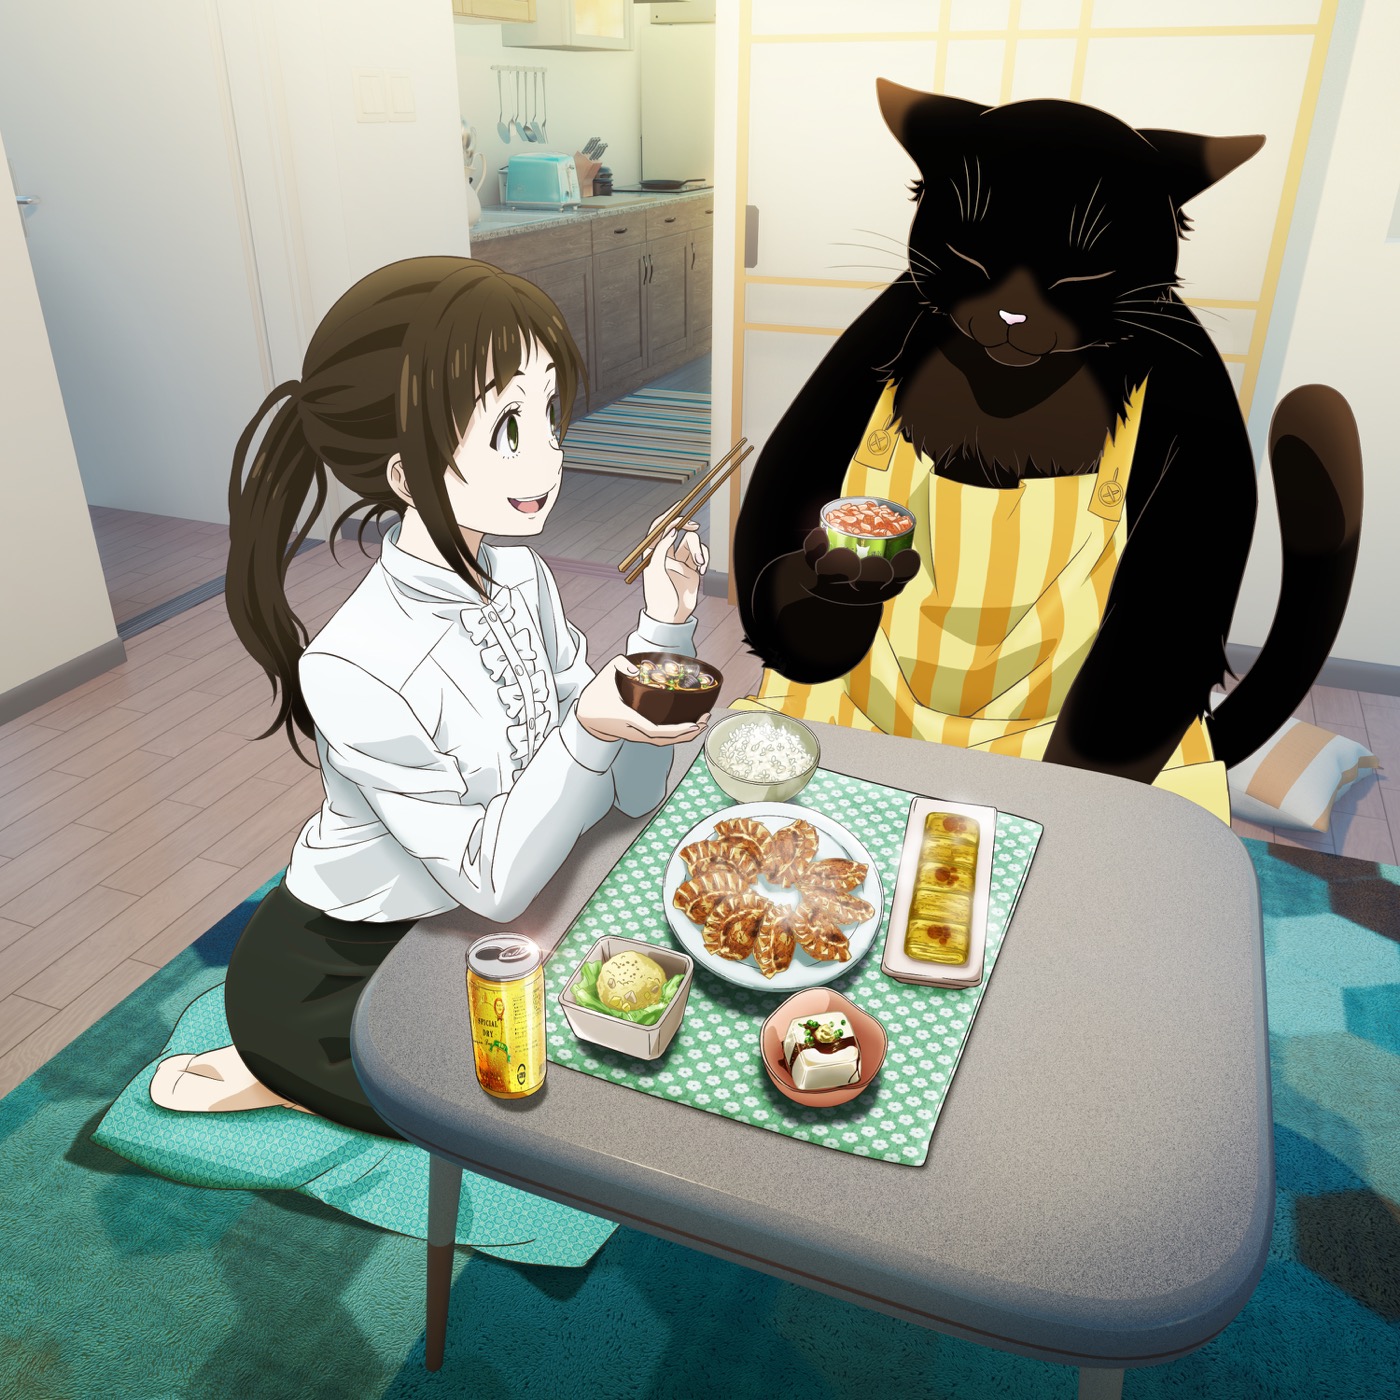 asmi、アニメ『デキる猫は今日も憂鬱』エンディングテーマ「破壊前夜のこと」のCDリリースが決定